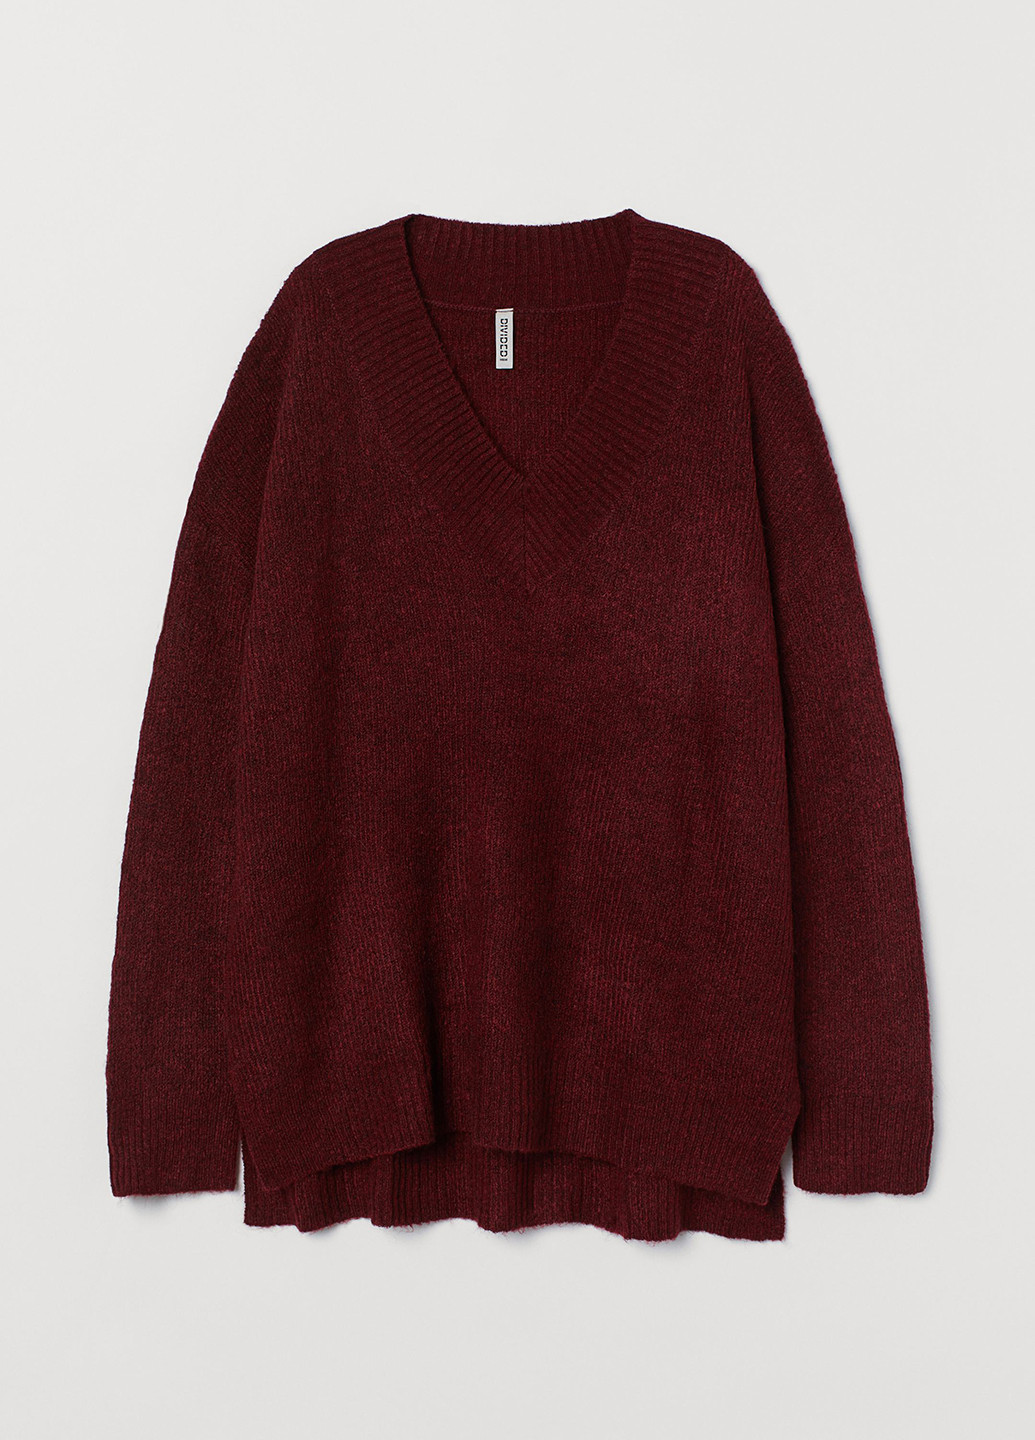 Бордовый демисезонный пуловер пуловер H&M